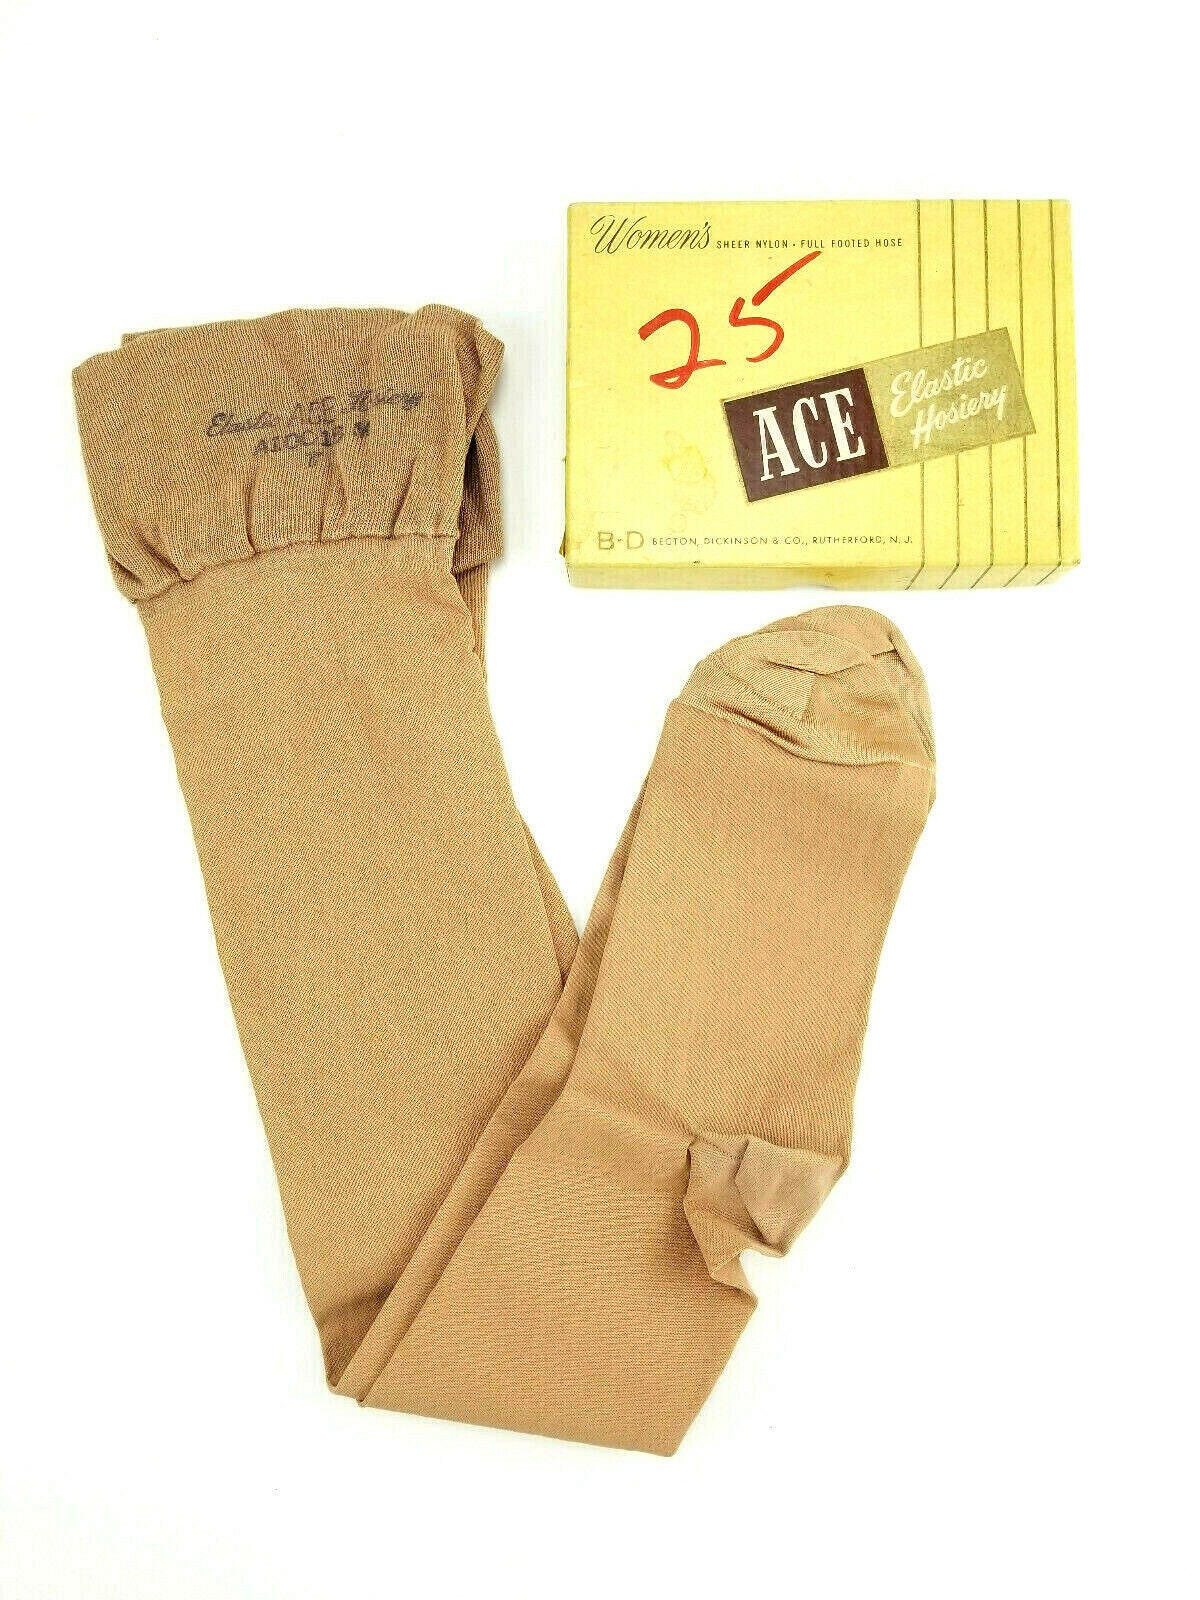 Ace Bandage Size Chart